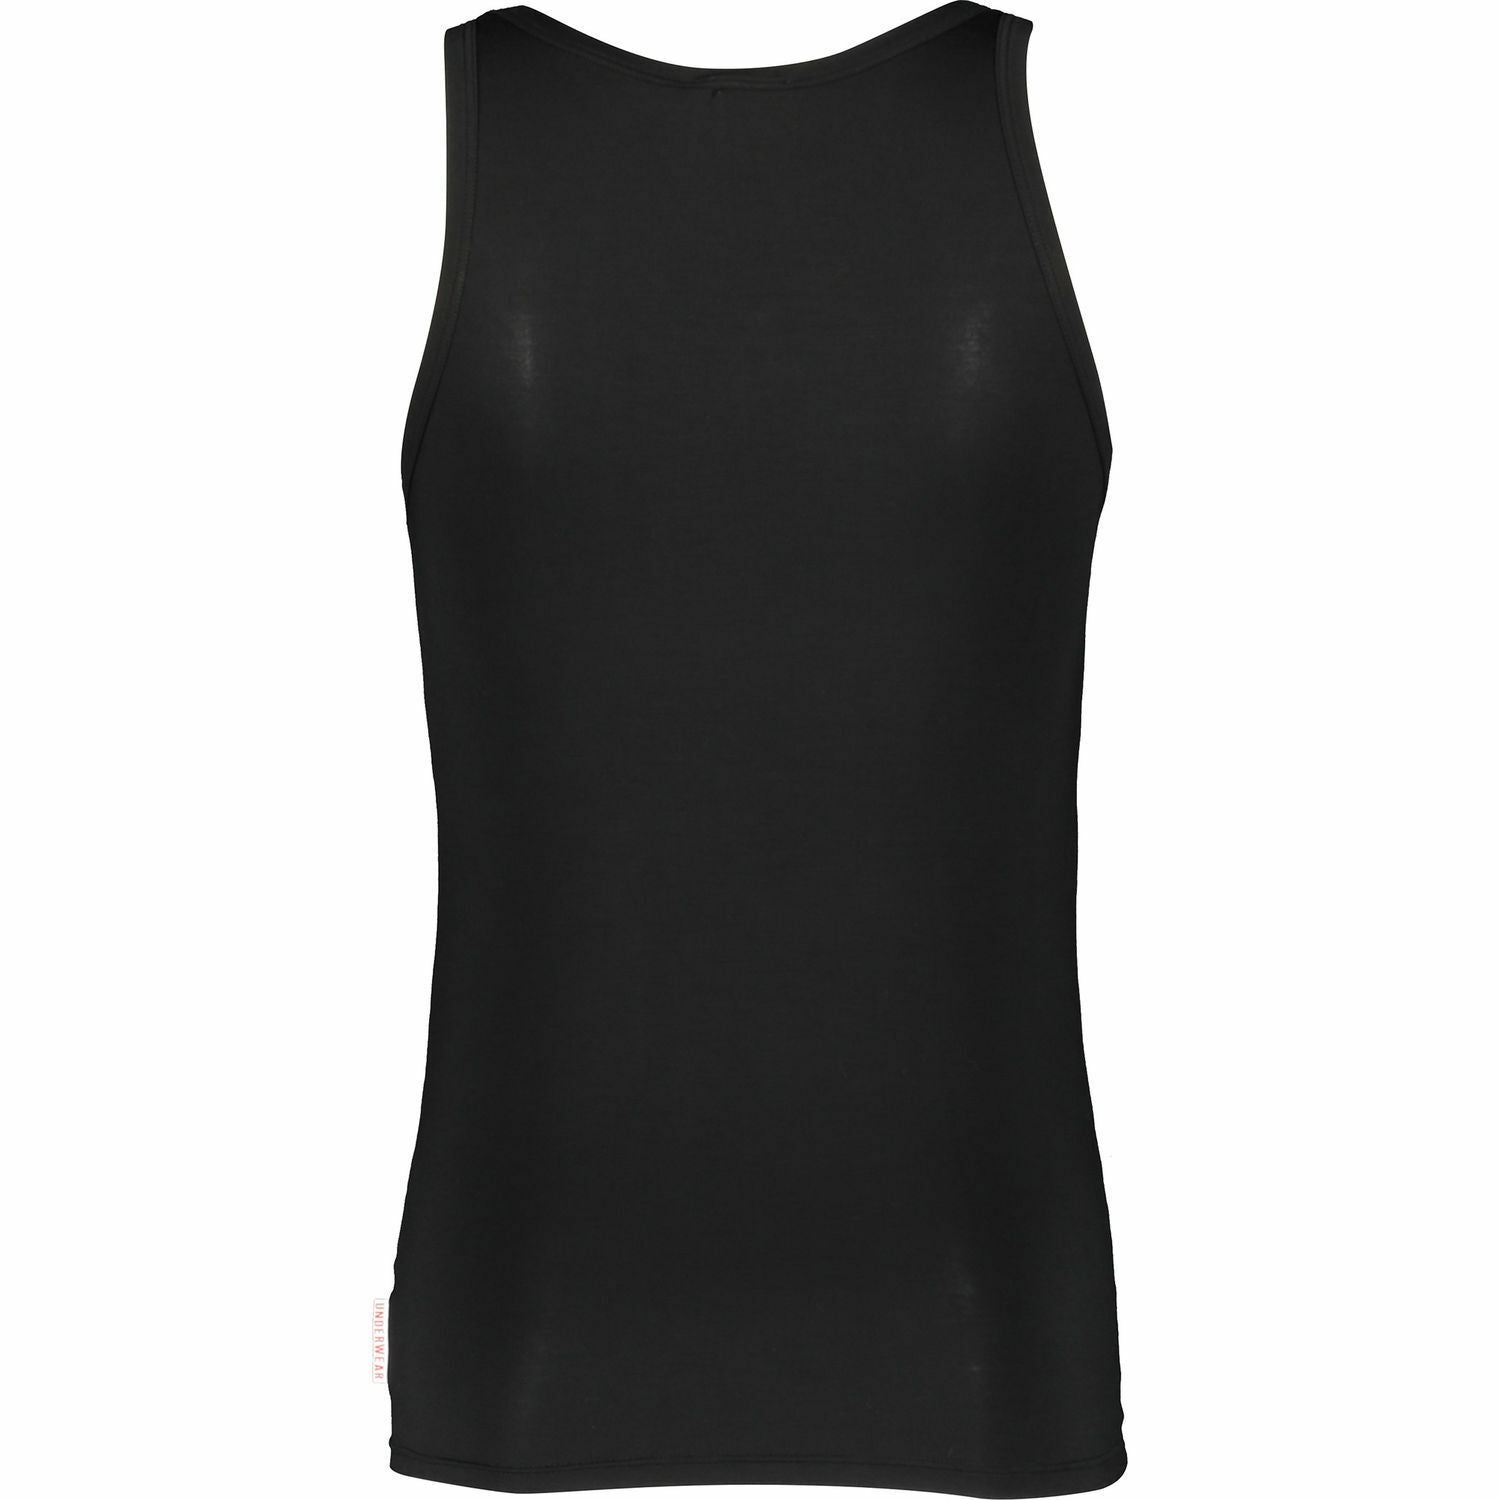 BIKKEMBERGS Mens Black Tank Top T-Shirt Modal Mix size M size L size XL